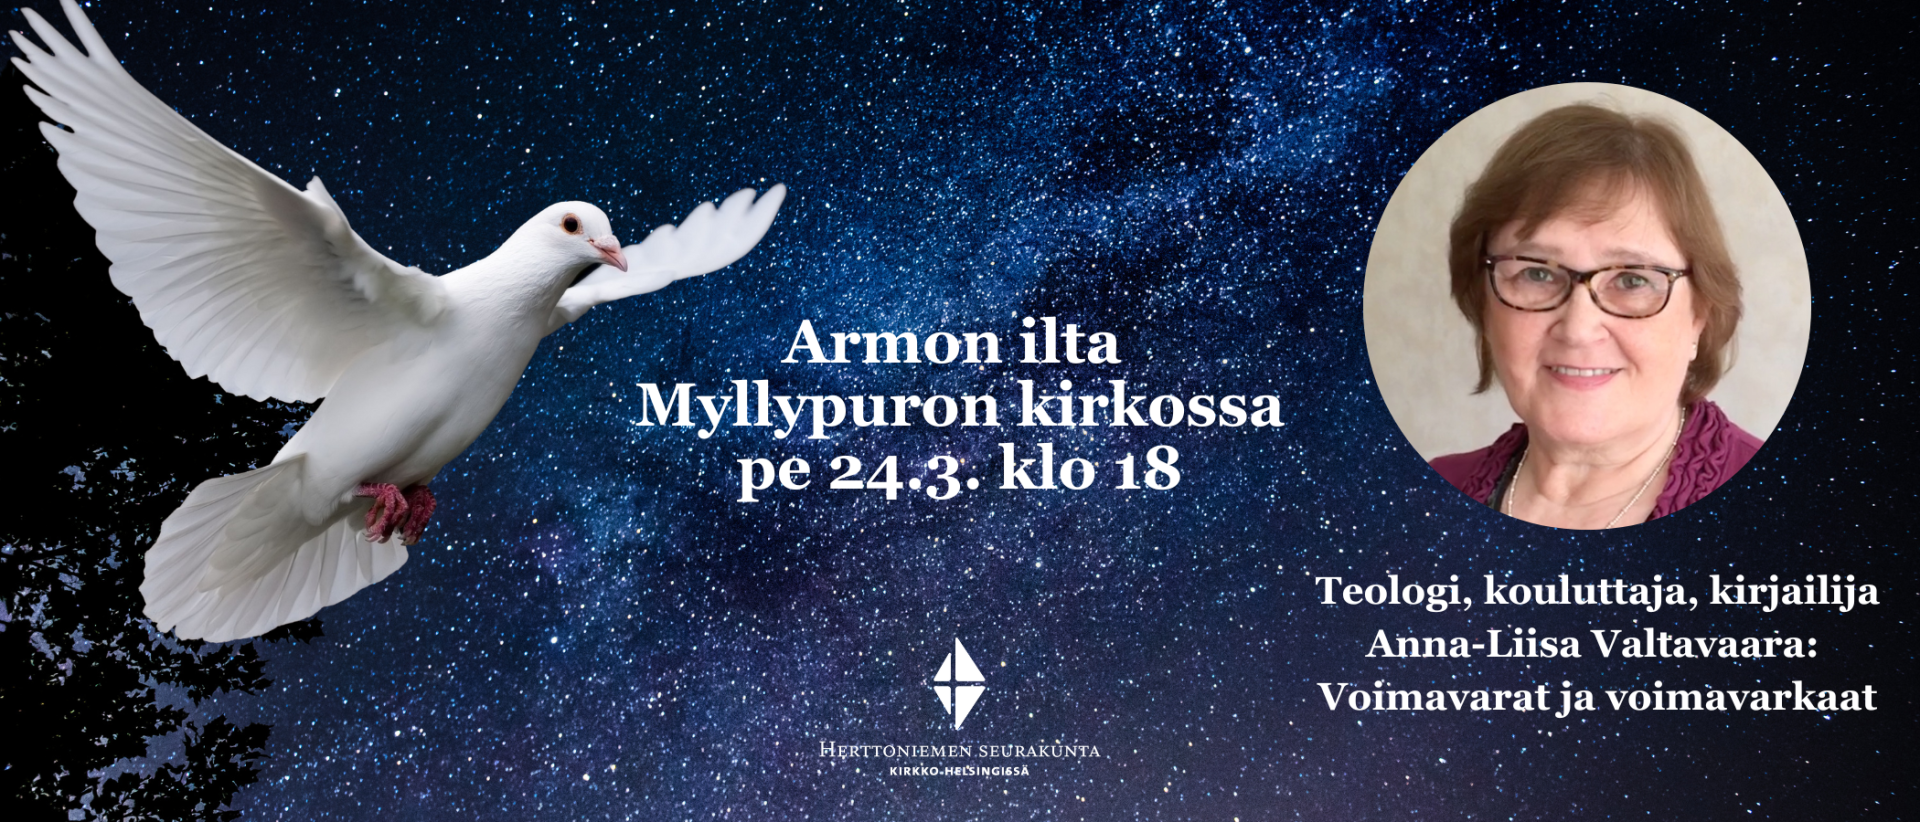 Armon ilta Myllypuron kirkossa pe 24..3. klo 18. Teologi, kirjailija, kouluttaja Anna-Liisa Valtavaara (kuva pyörylässä. Taustalla tähtitaivas, valkoinen kyyhky